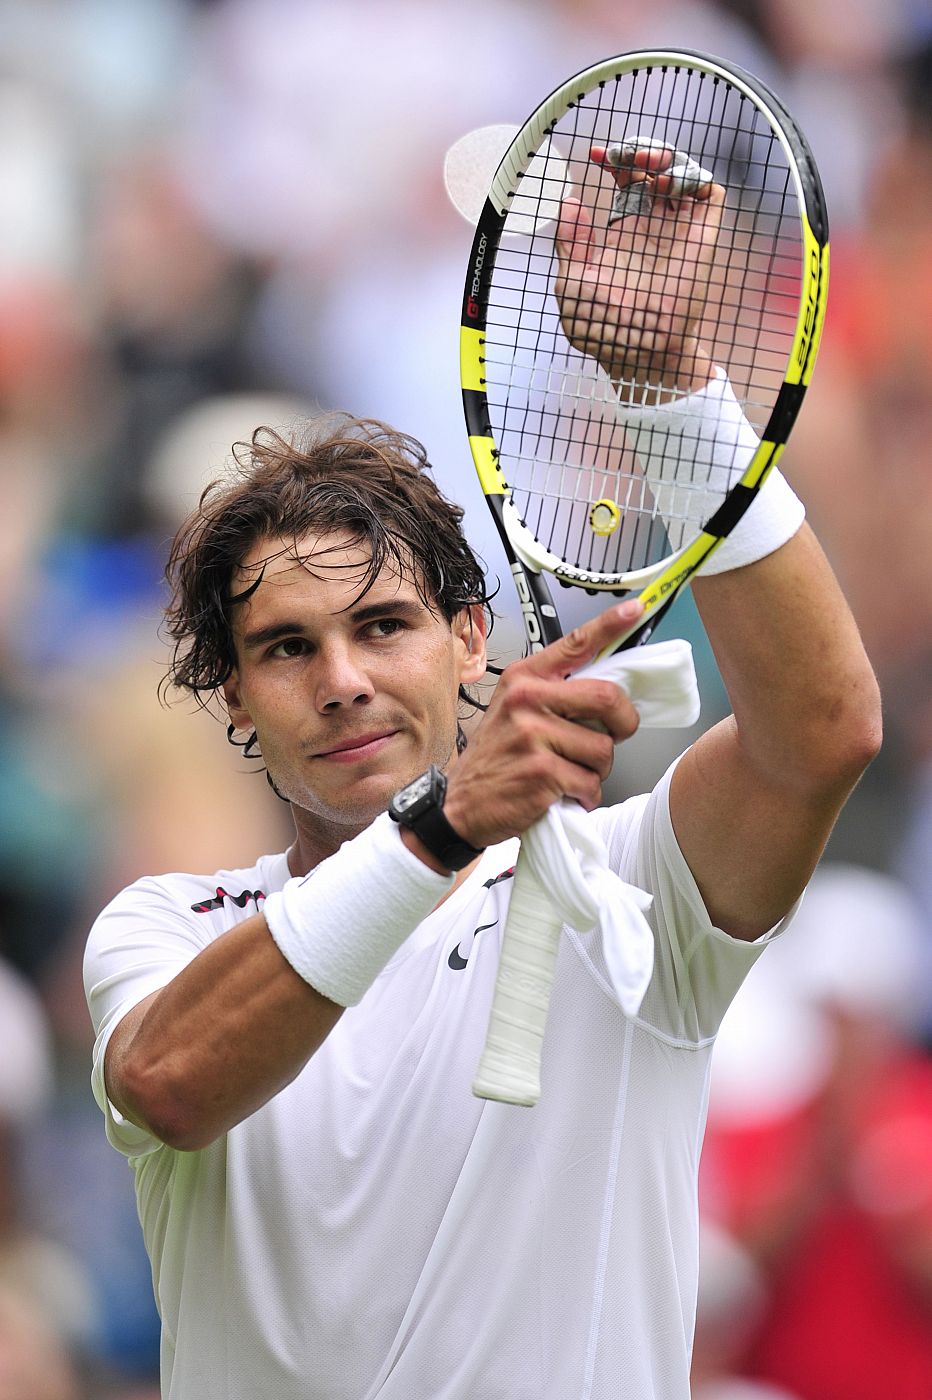 Imagen de Rafa Nadal durante Wimbledon 2012 jugado el pasado mes de junio.